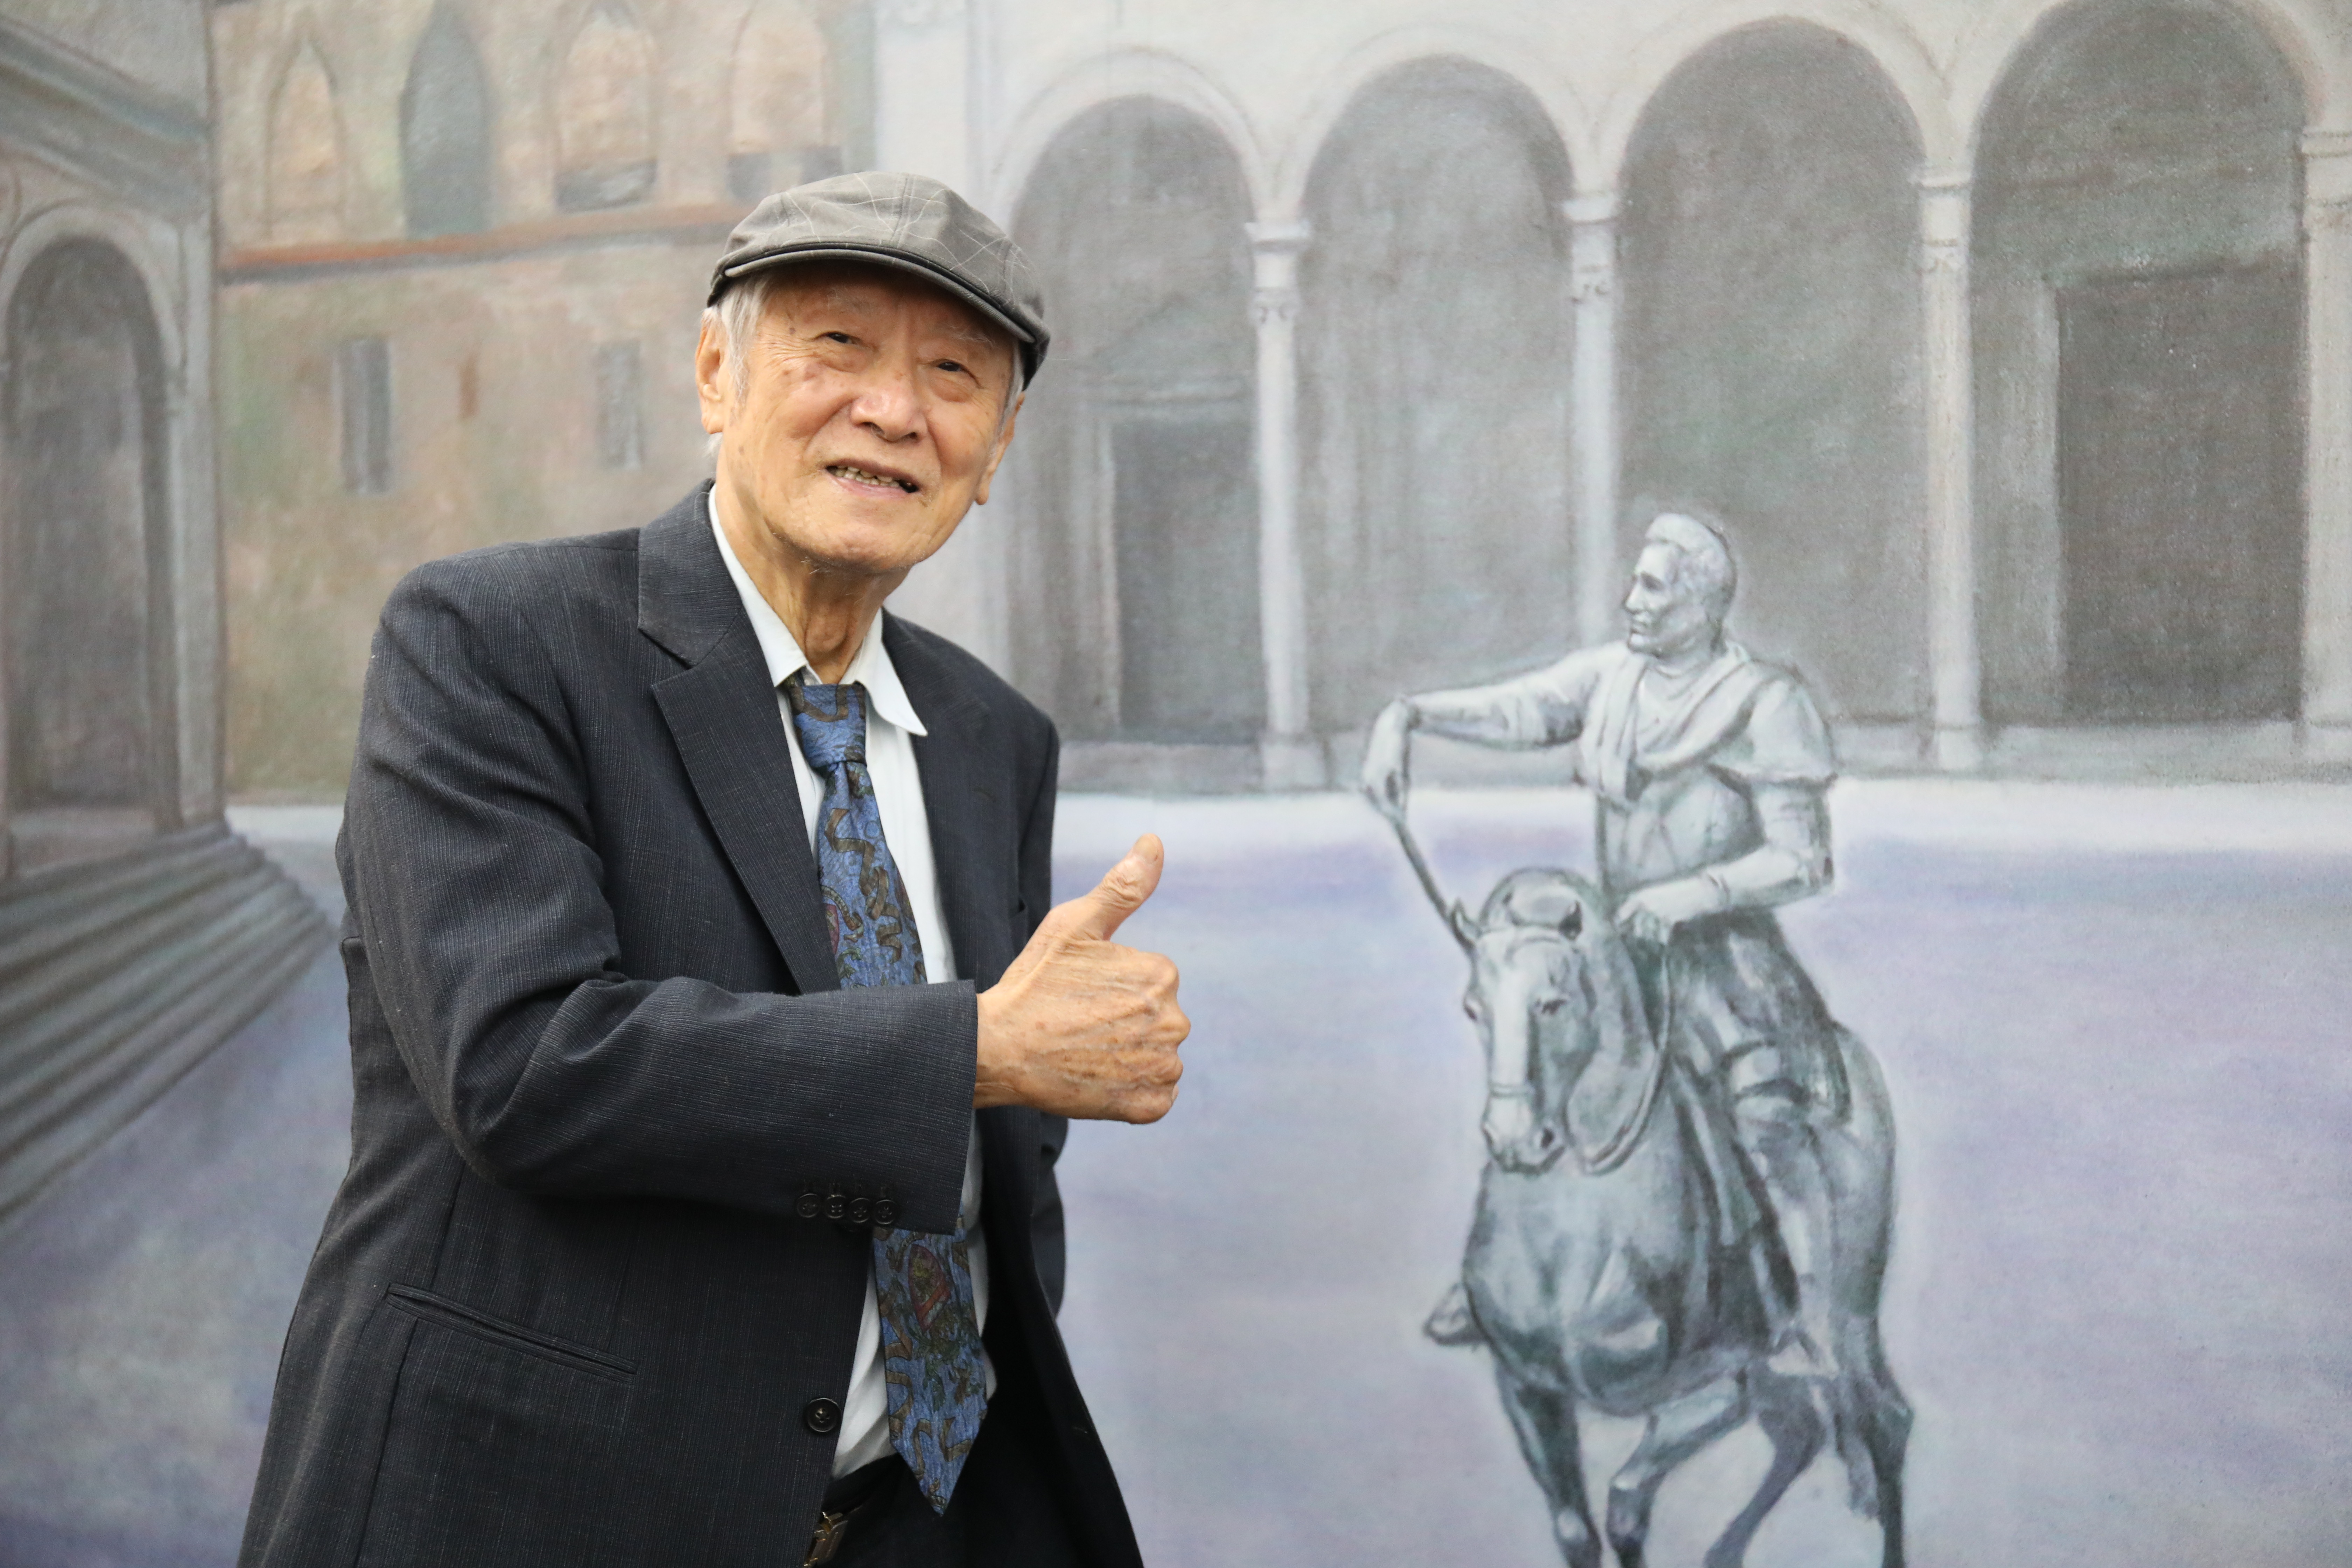 陳 景 容 教 授 是 臺 灣 藝 壇 多 元 創 作 的 藝 術 家 ， 被 譽 為 是 臺 灣 的 超 現 實 主 義 大 師 